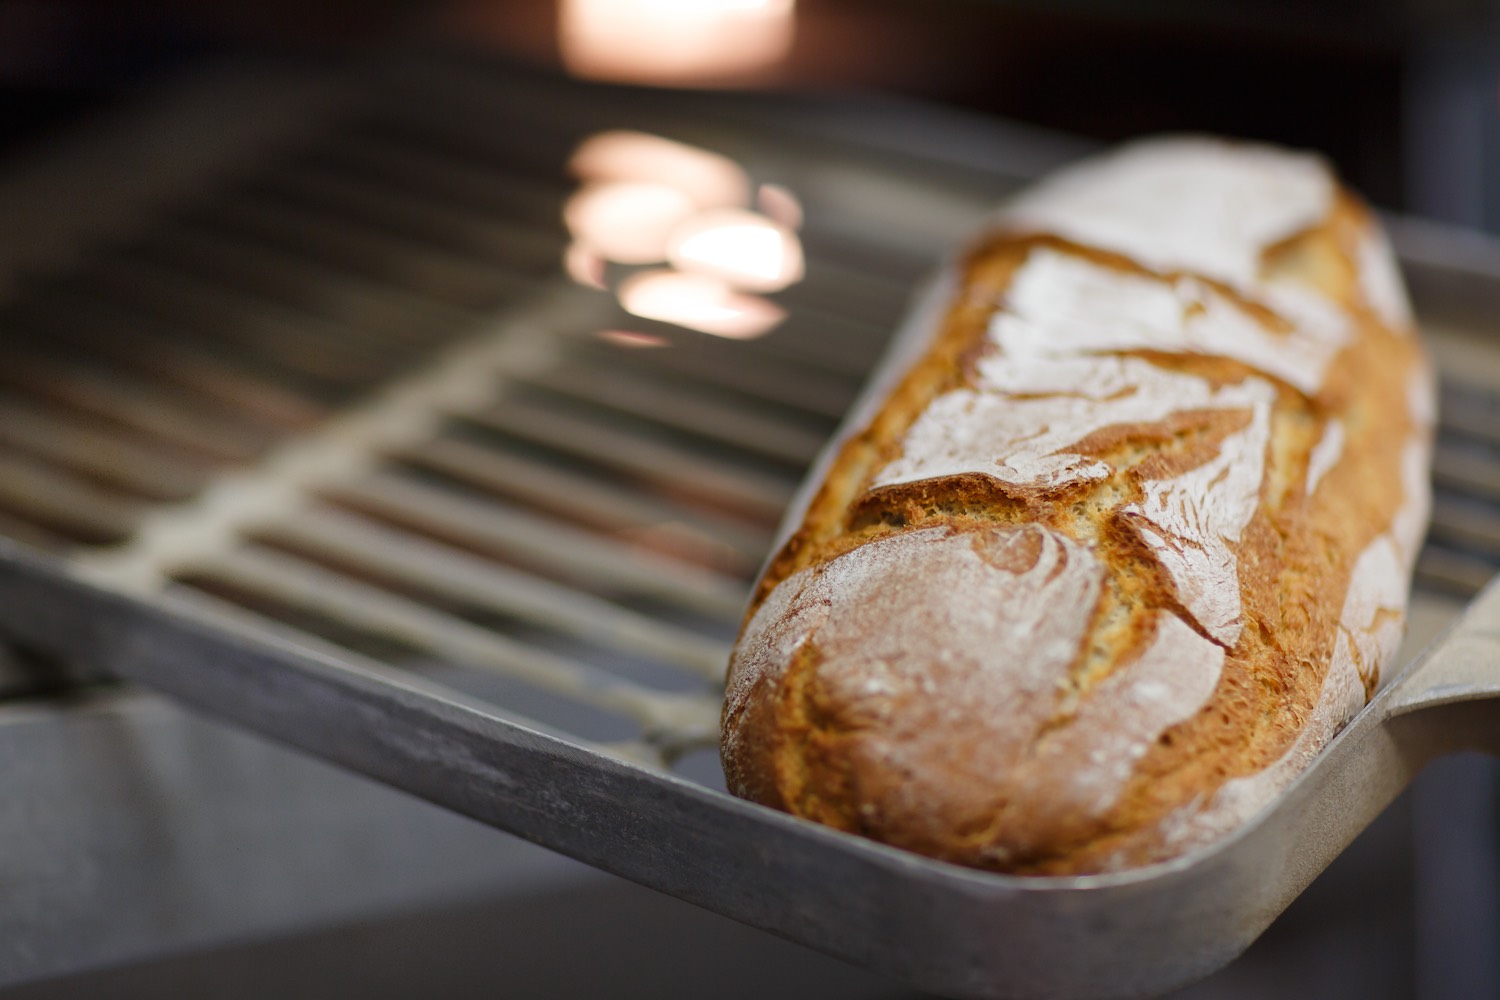 Al Forno Garbo si trova il pane buono e sano, fatto solo con grani antichi, farine non trattate e pasta madre, coniugando bontà e genuinità